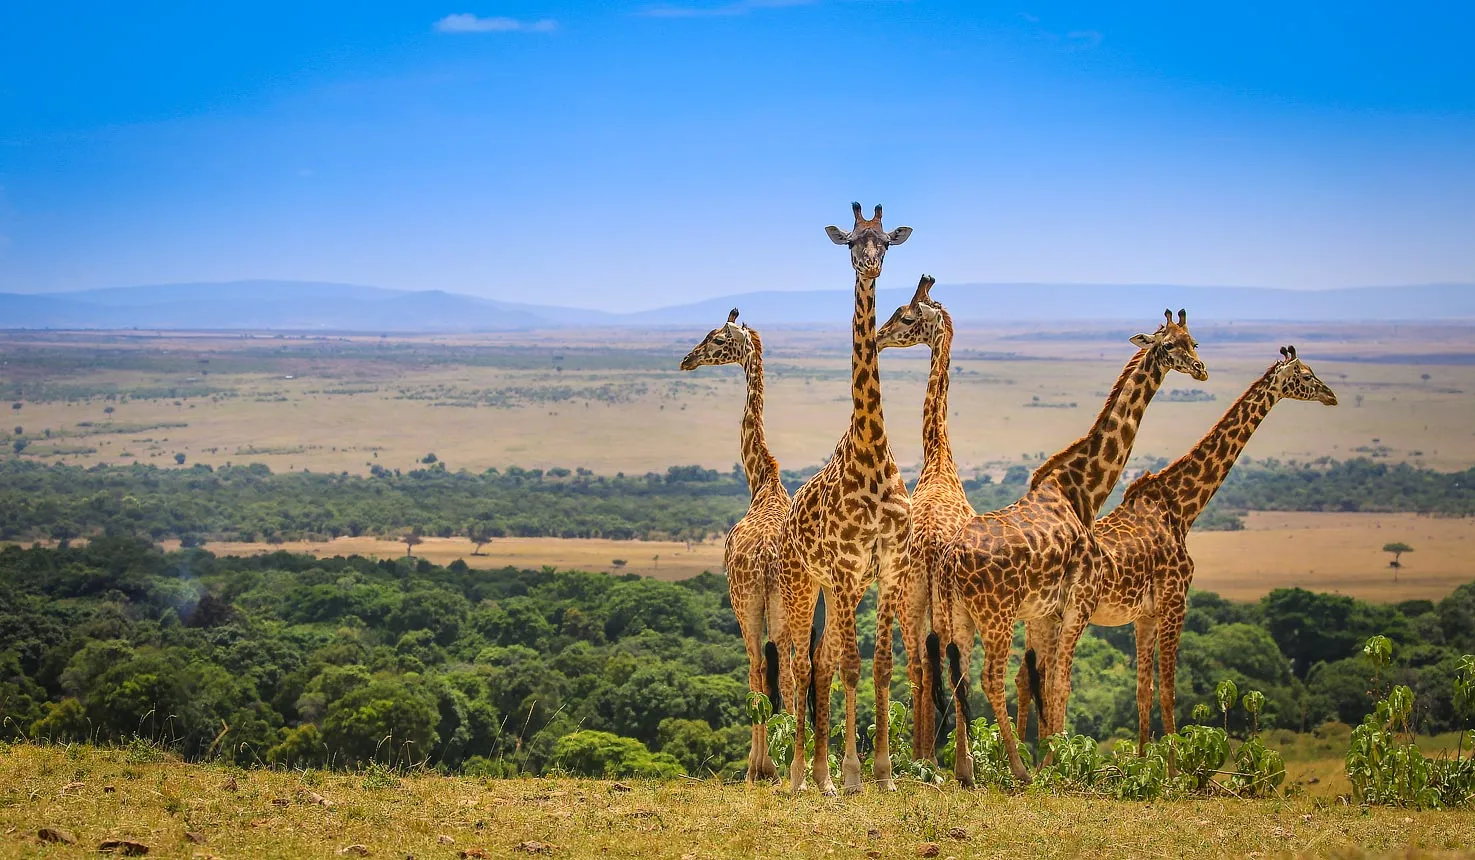 Giraffe at Masai Mara